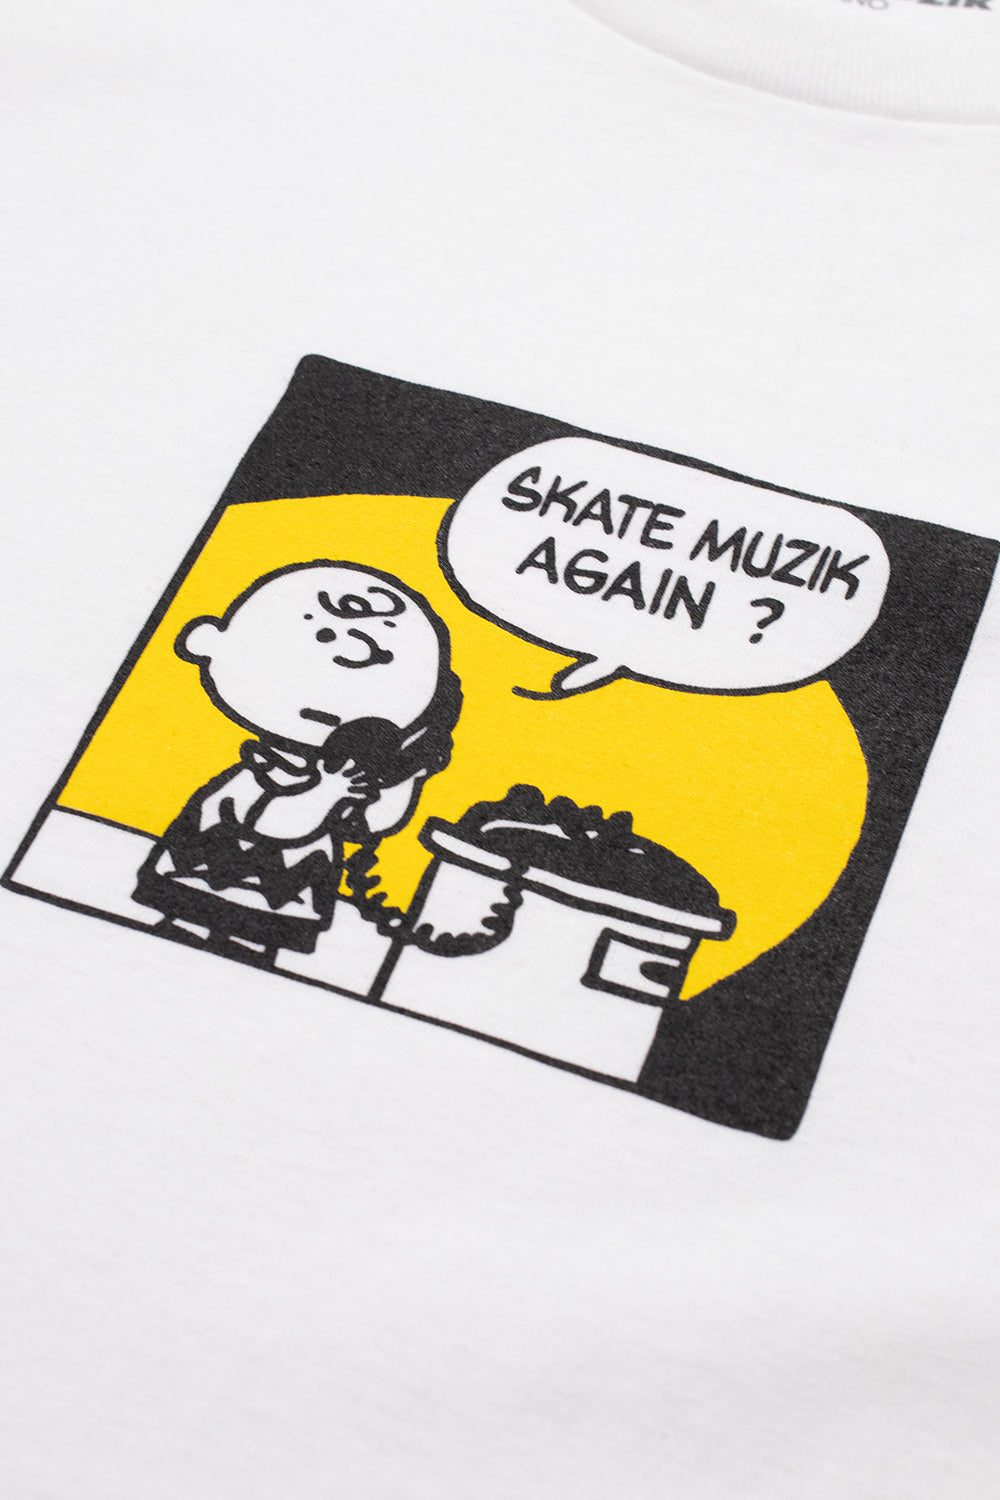 Skate Muzik SM Again? T-Shirt White - BONKERS